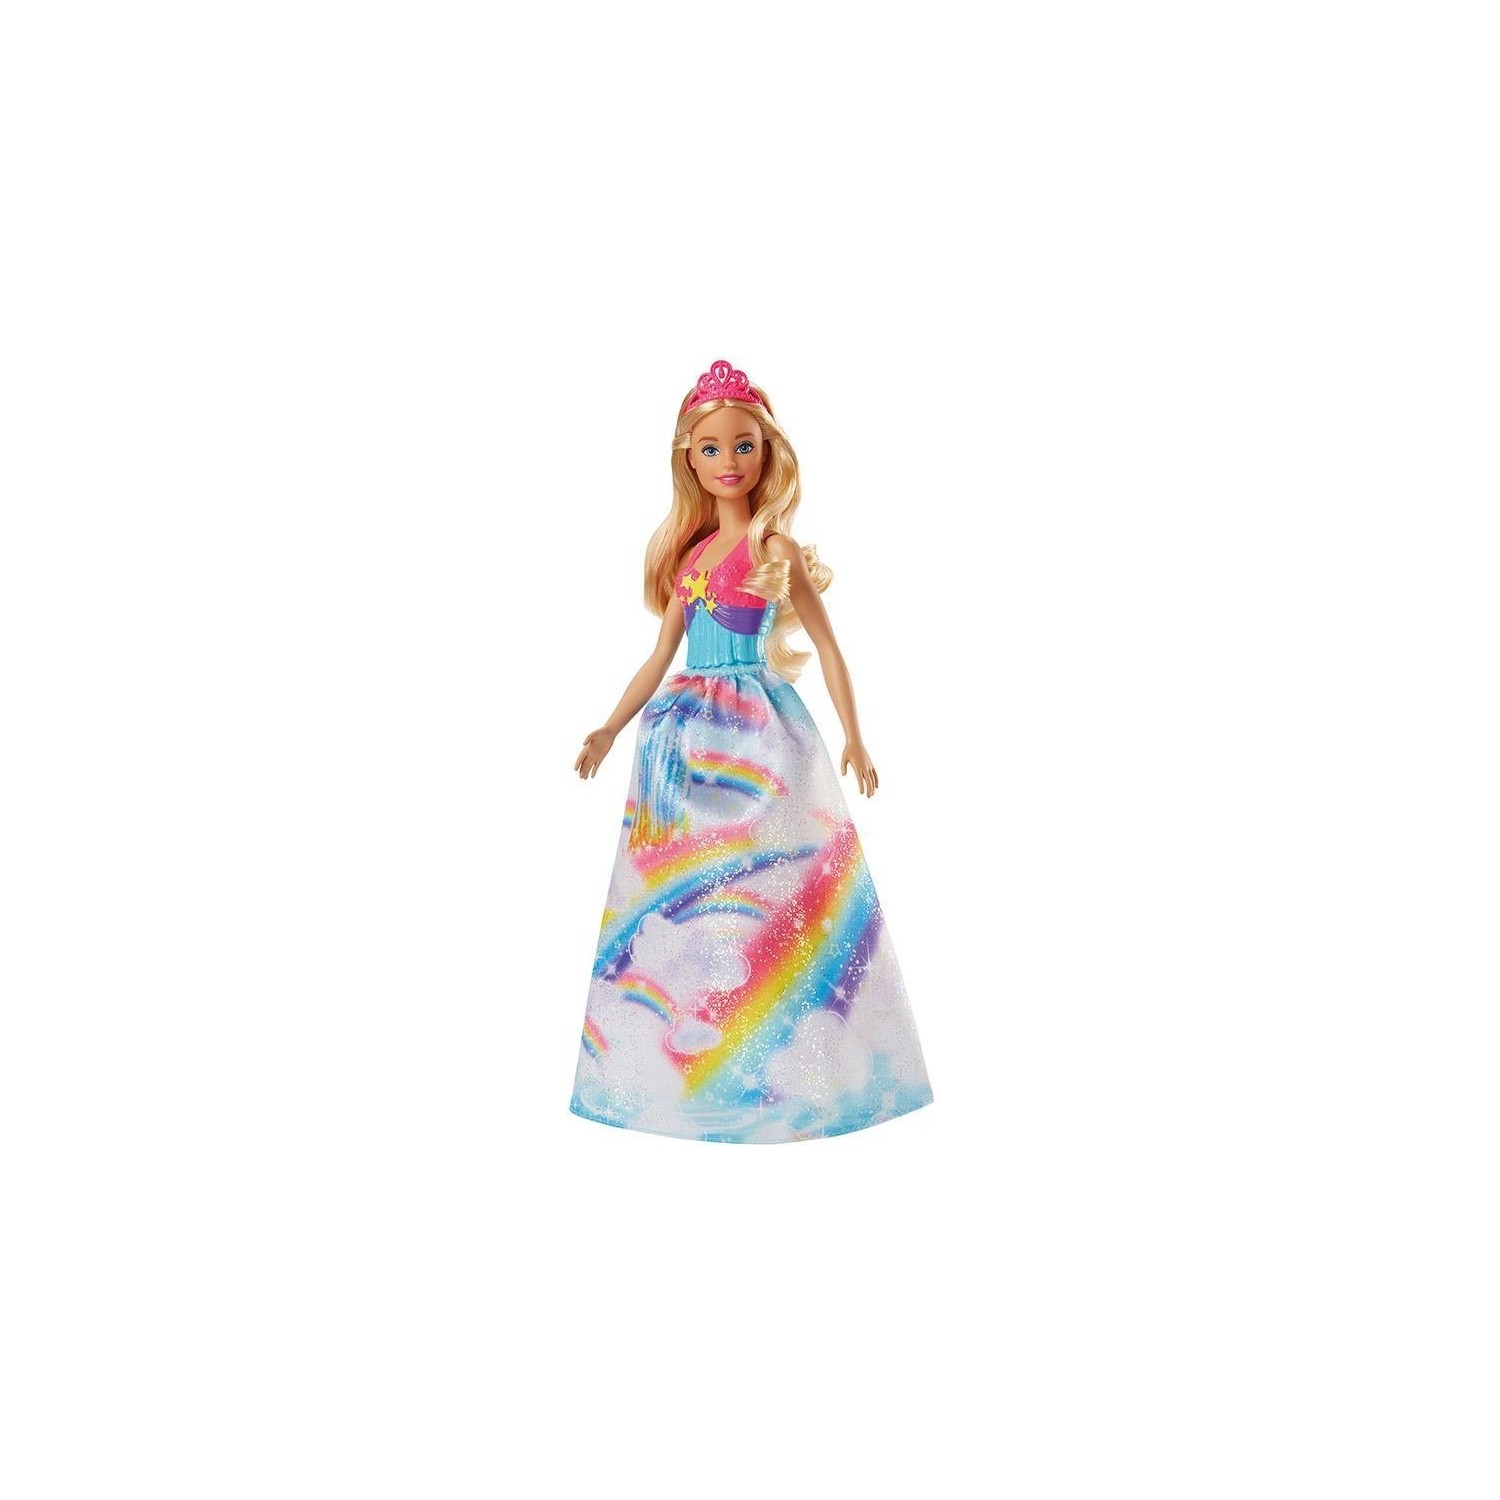 Кукла Barbie Dreamtopia Princess Dolls Fjc94 кукла barbie dreamtopia princess dolls fjc94